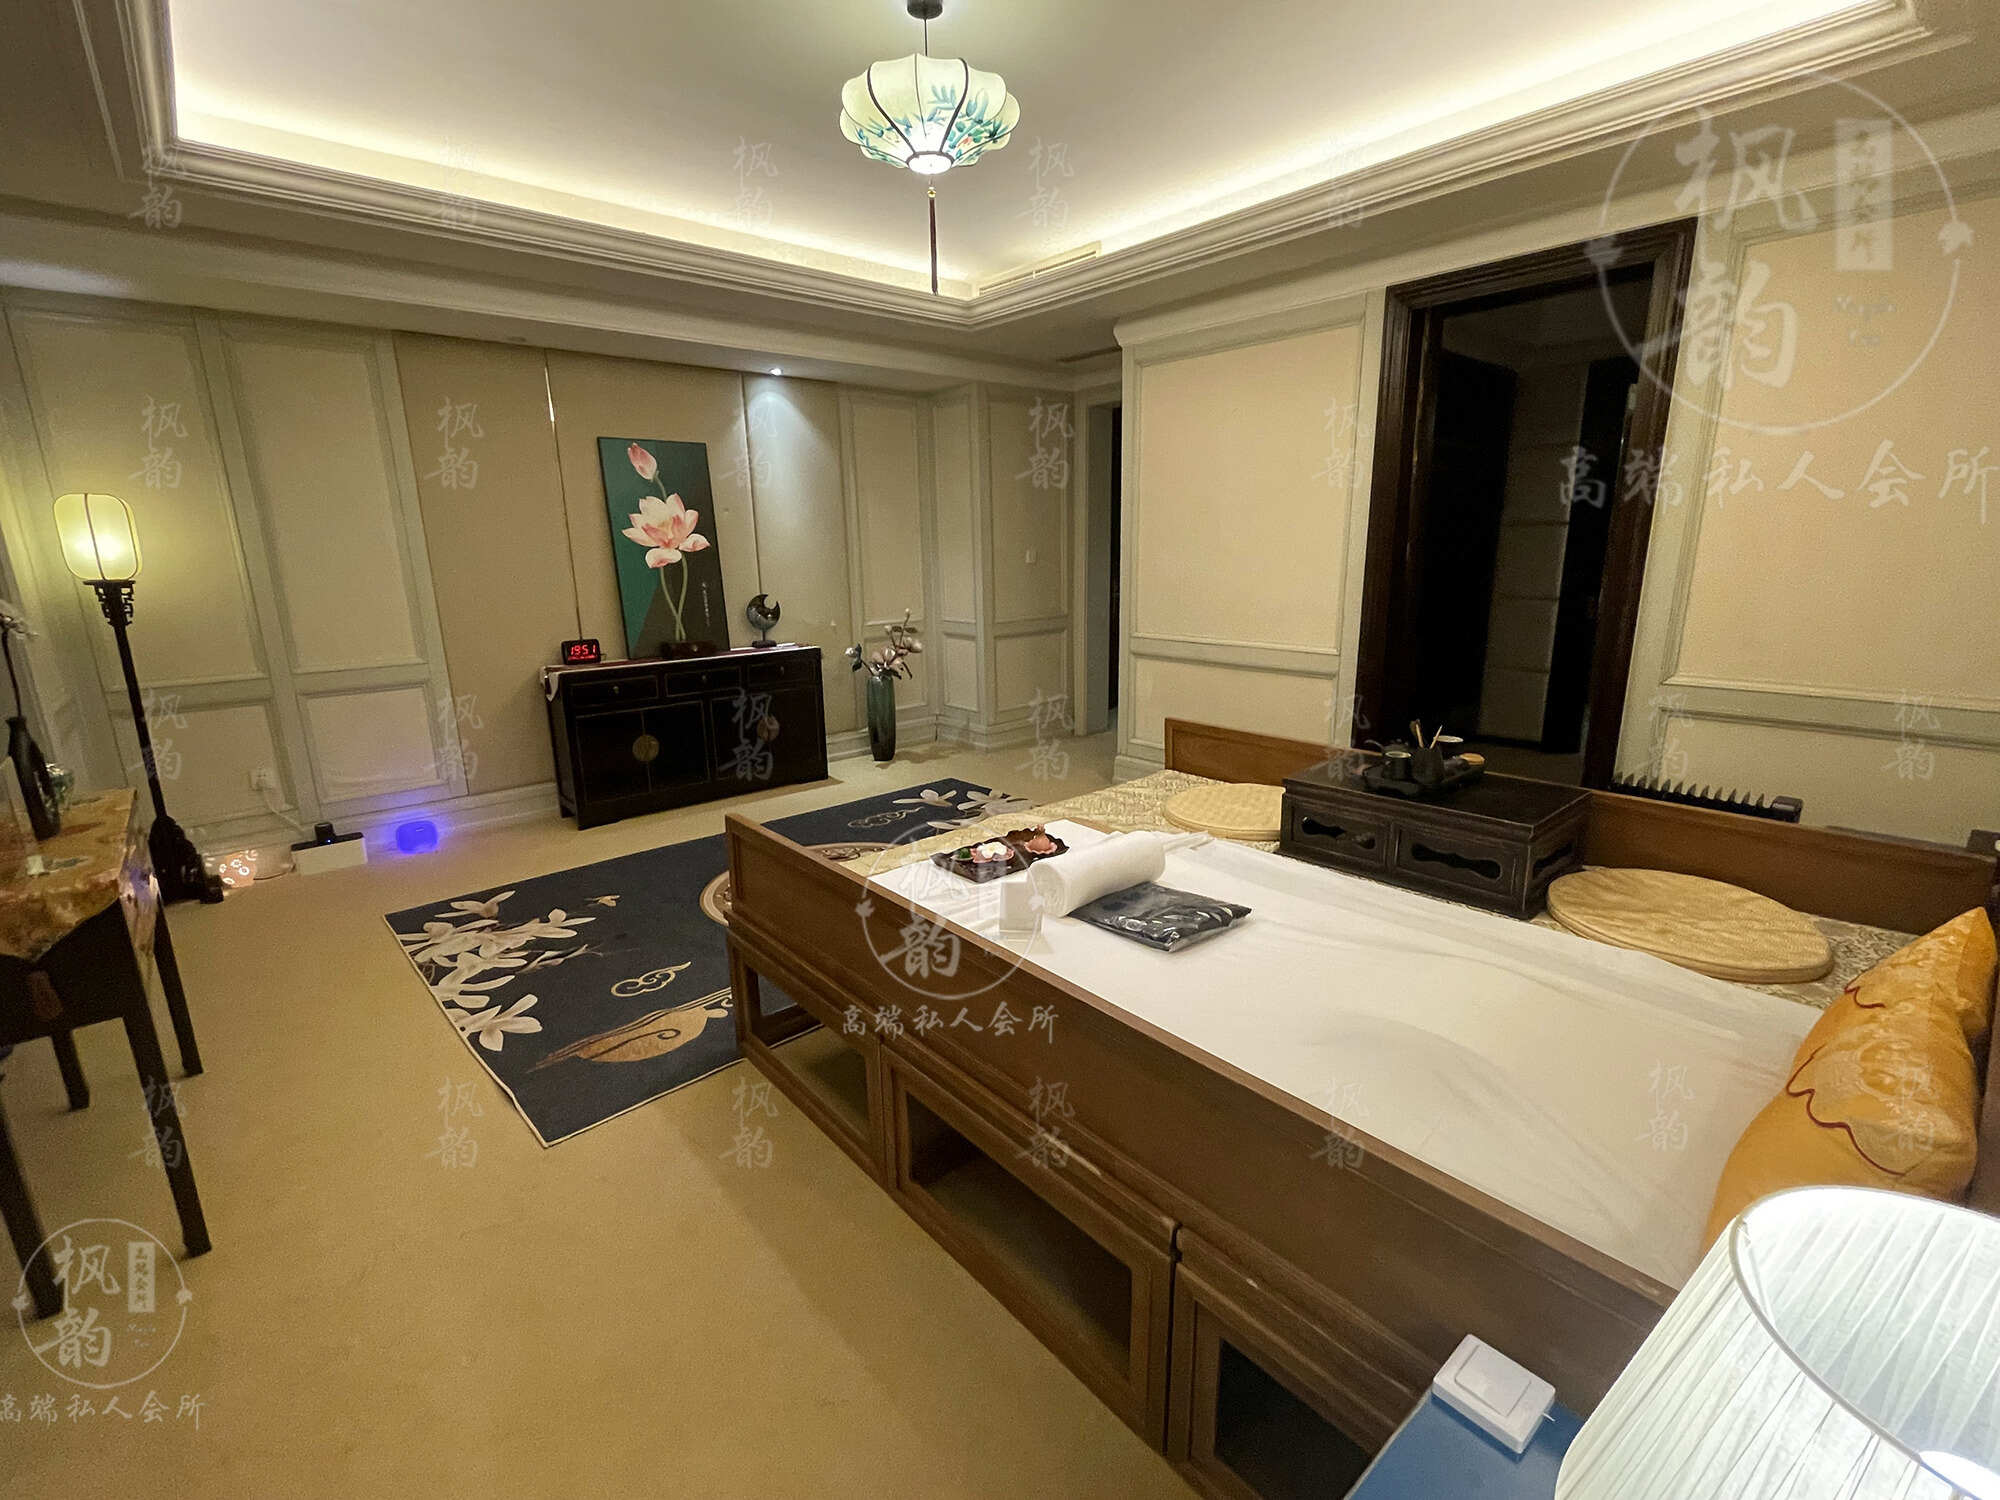 深圳天津渔阳鼓楼人气优选沐足会馆房间也很干净，舒适的spa体验